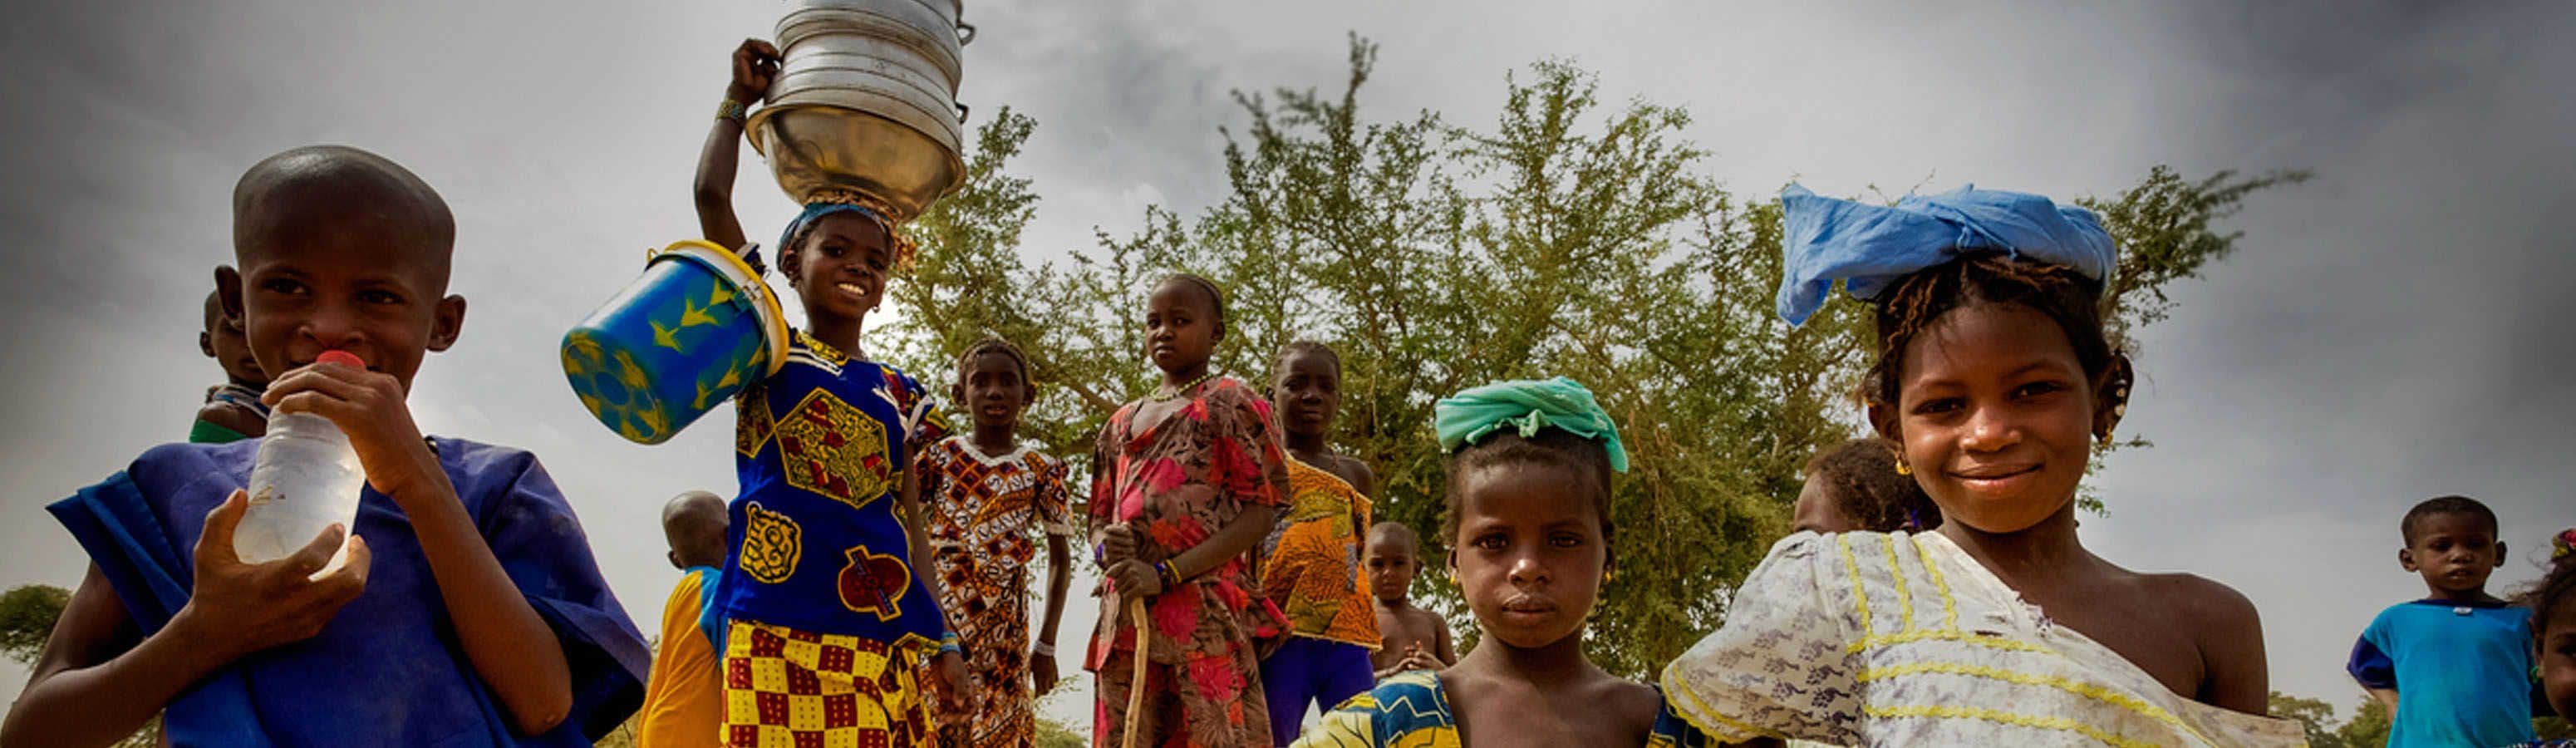 Senegal – Africa for Beginners